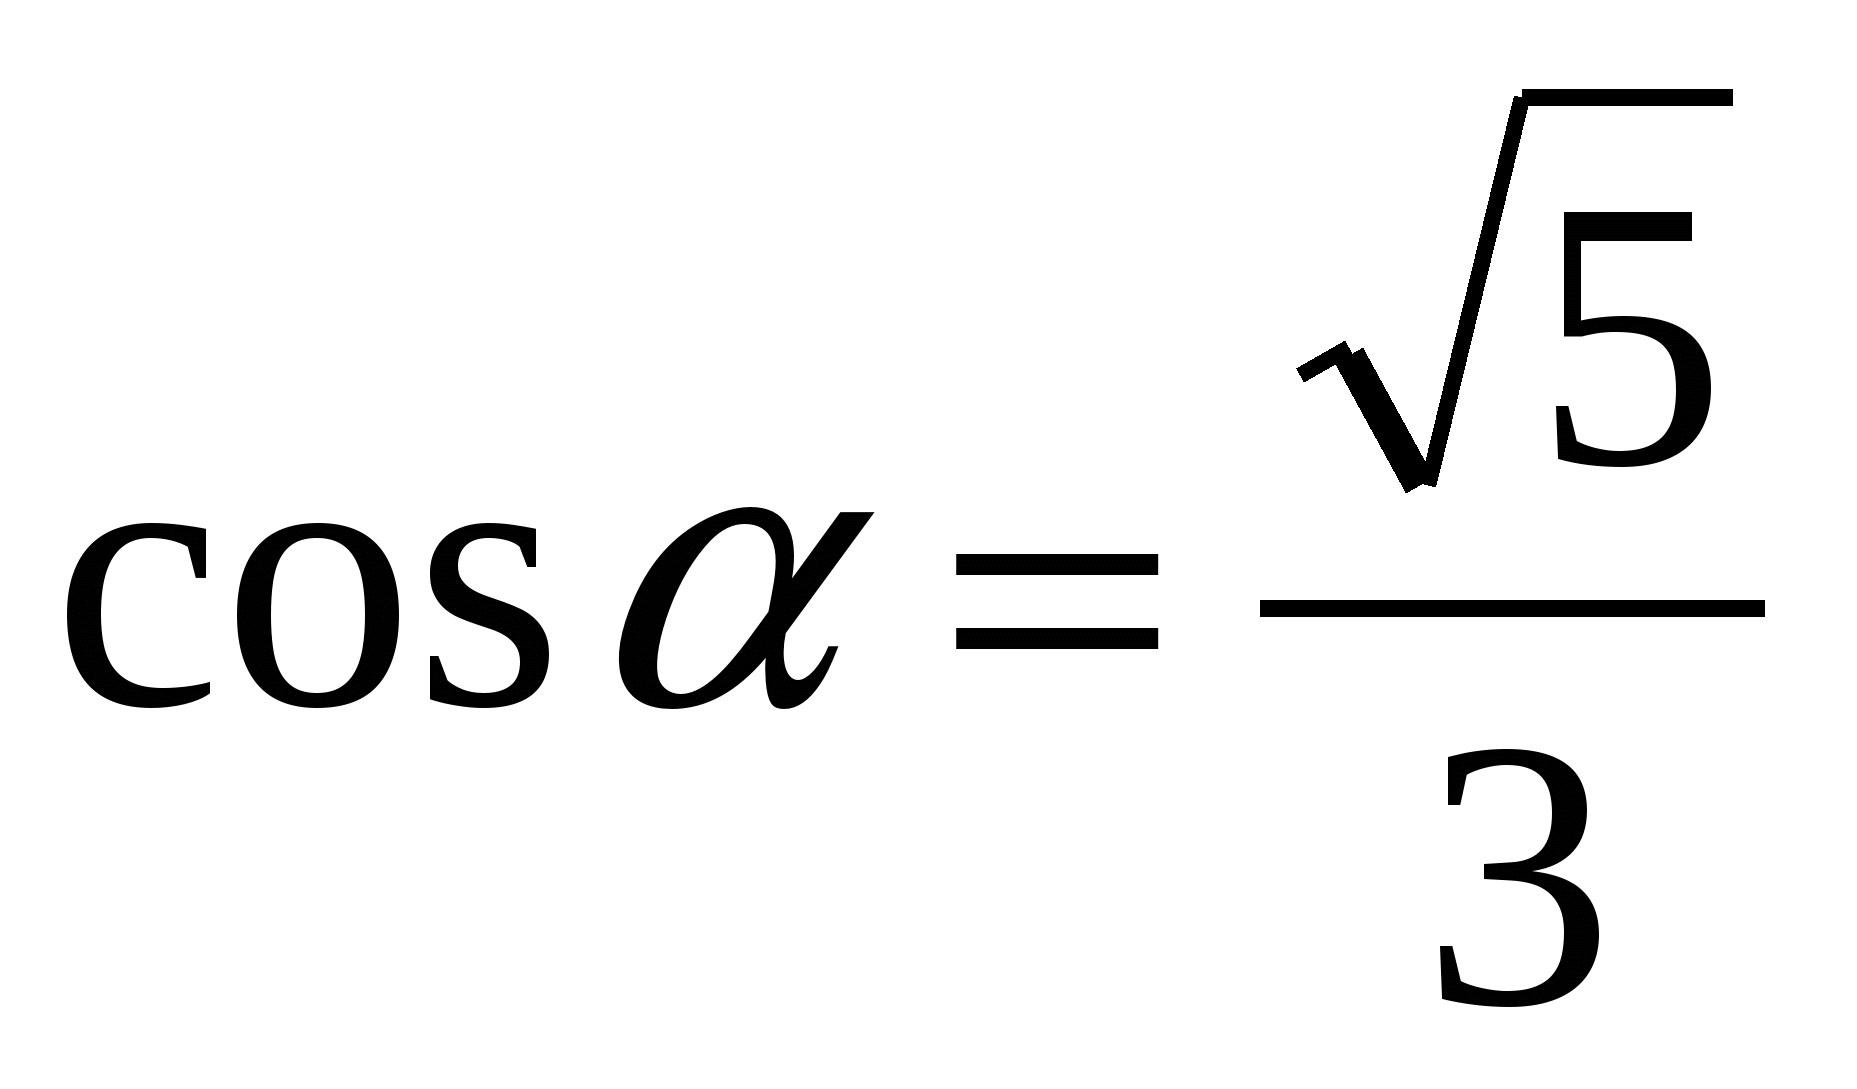 Негізгі тригонометриялық тепе-теңдіктерге есептер шығару.